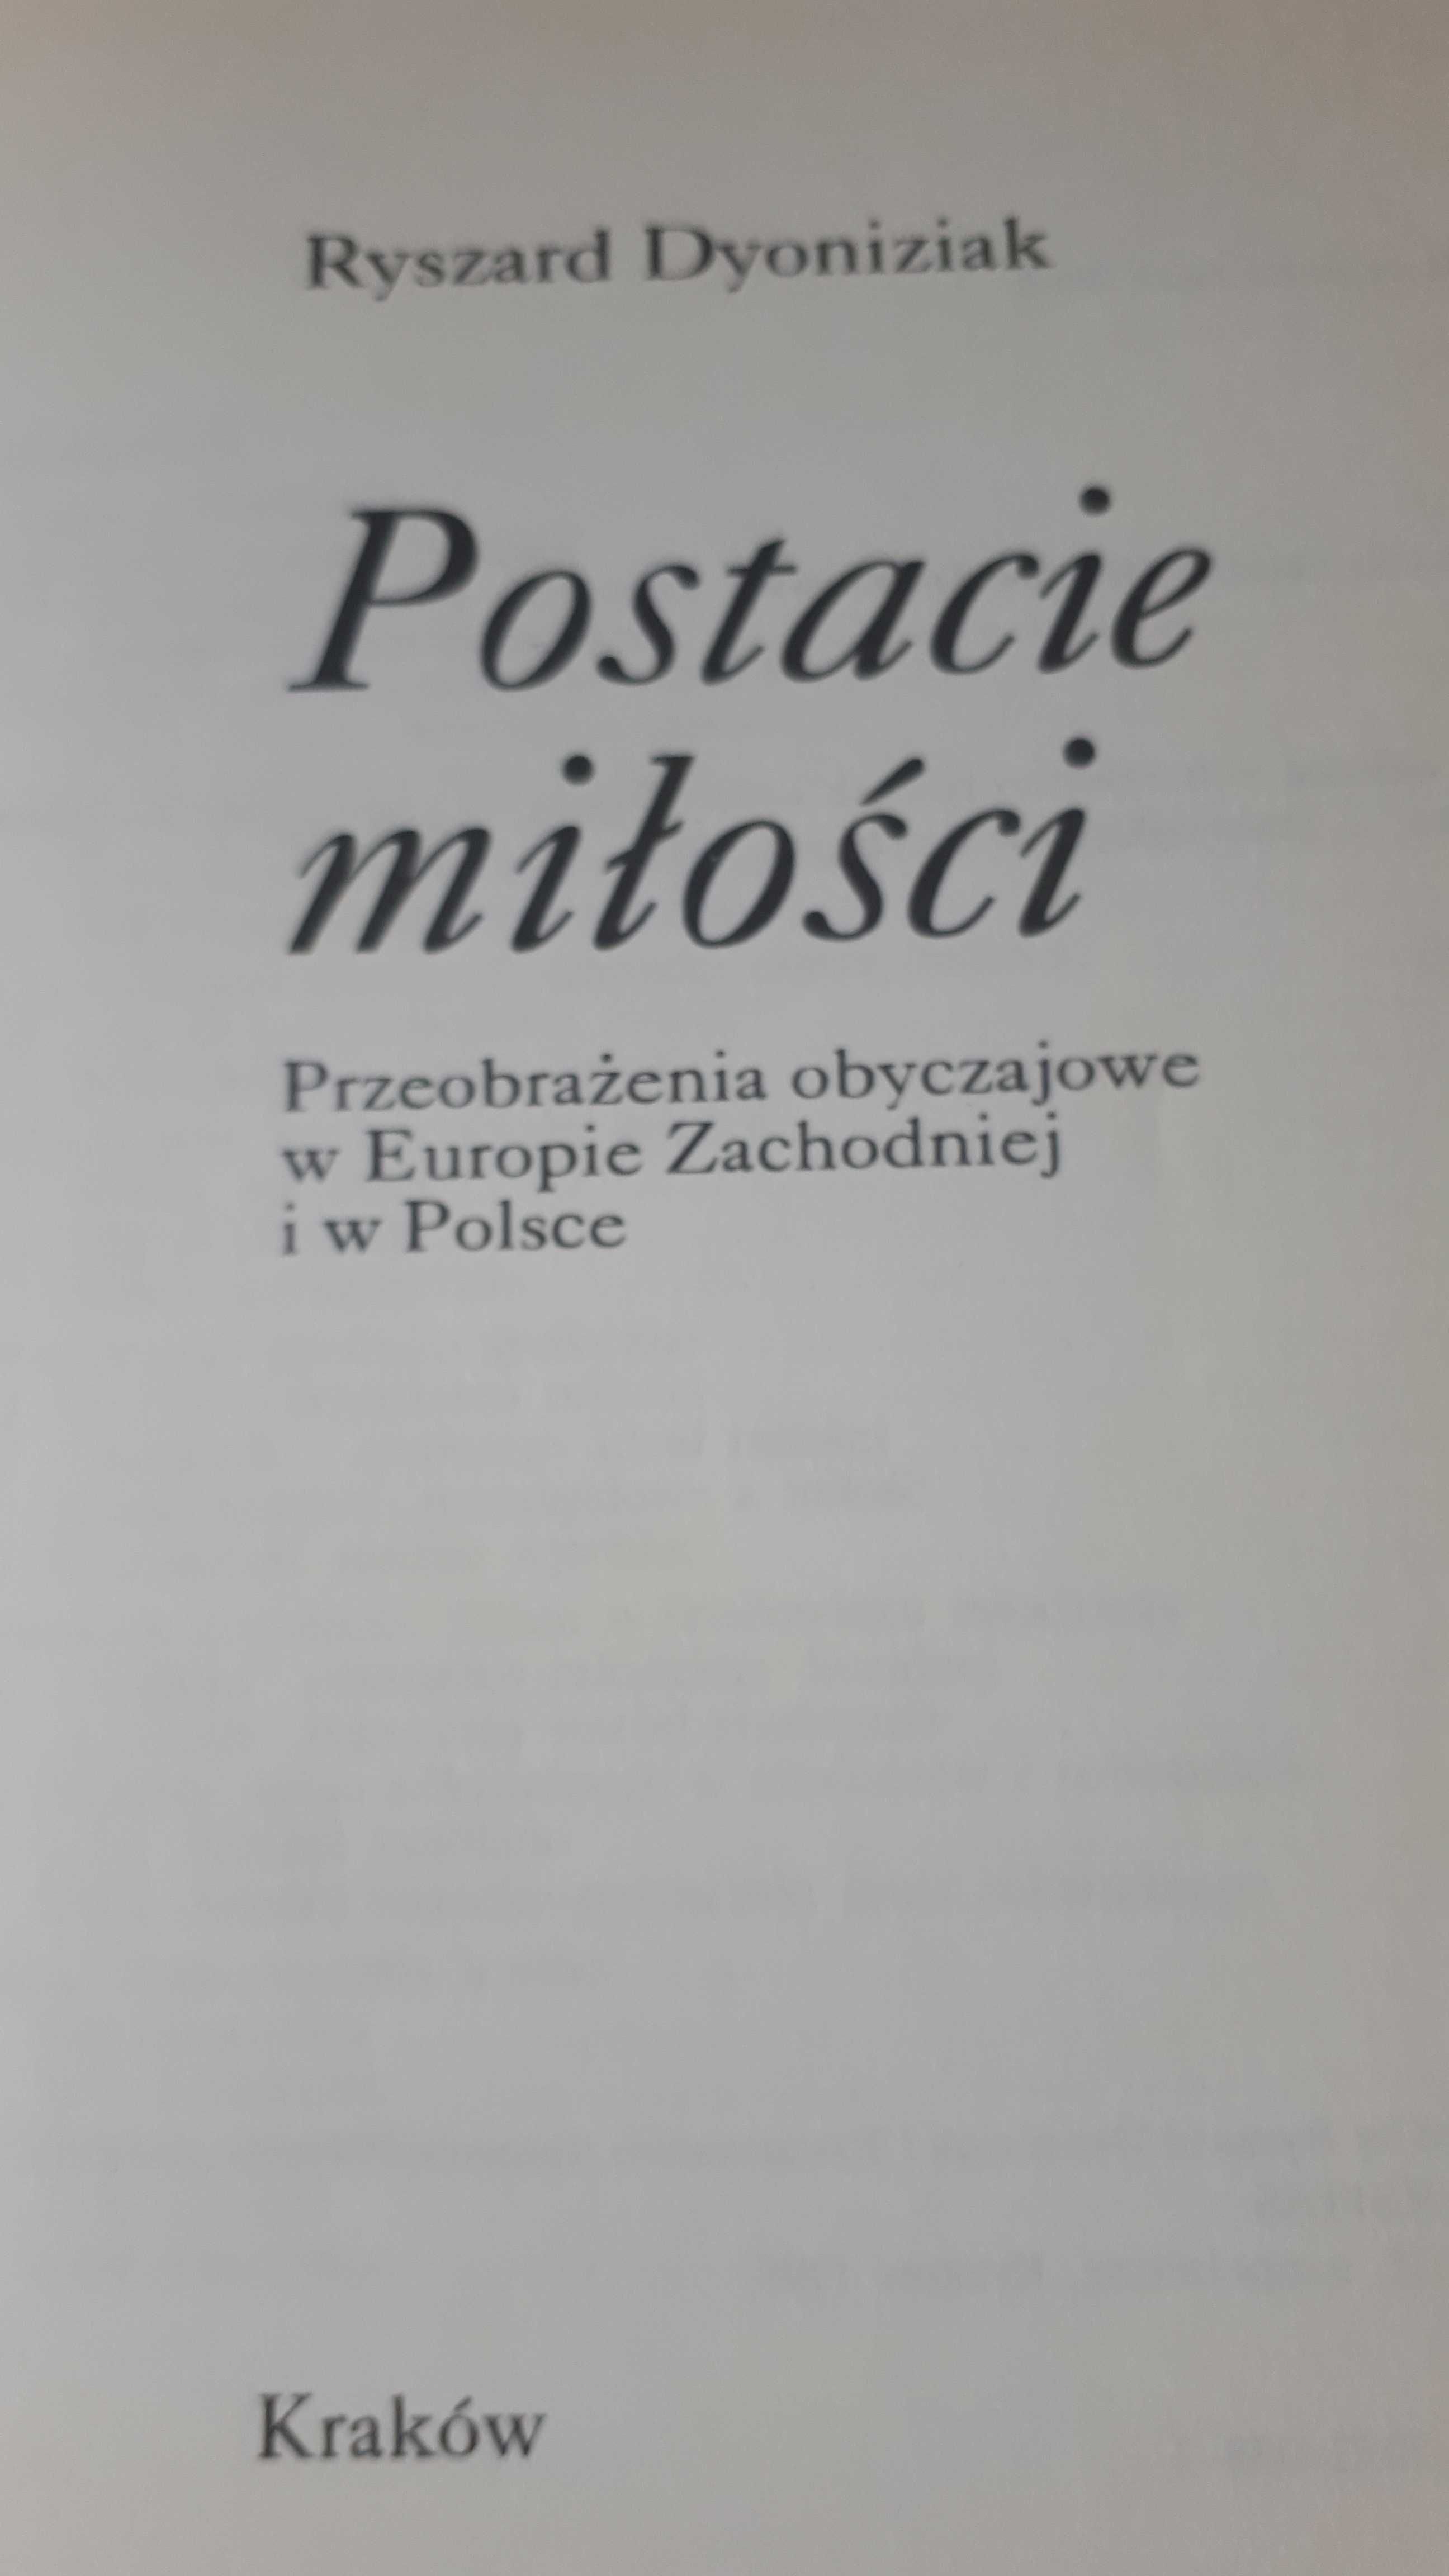 R. Dyoniziak, "Postacie miłości", 1995